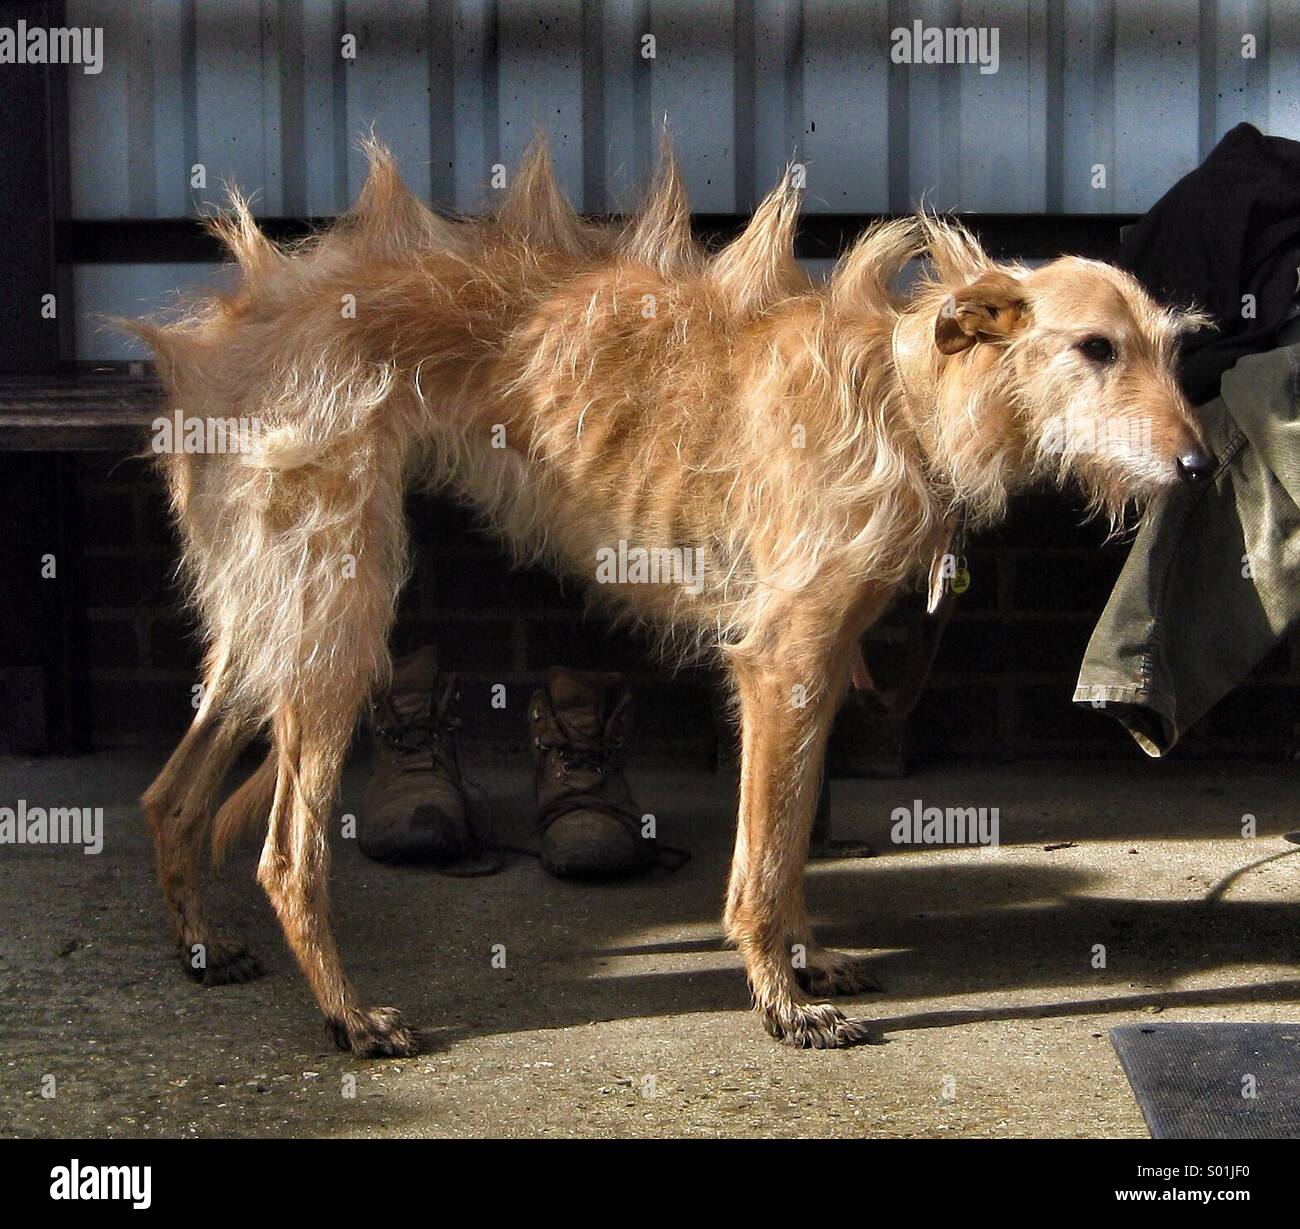 Ein Hund mit Haaren in Stacheln auf seinem gebildet Stockfotografie - Alamy